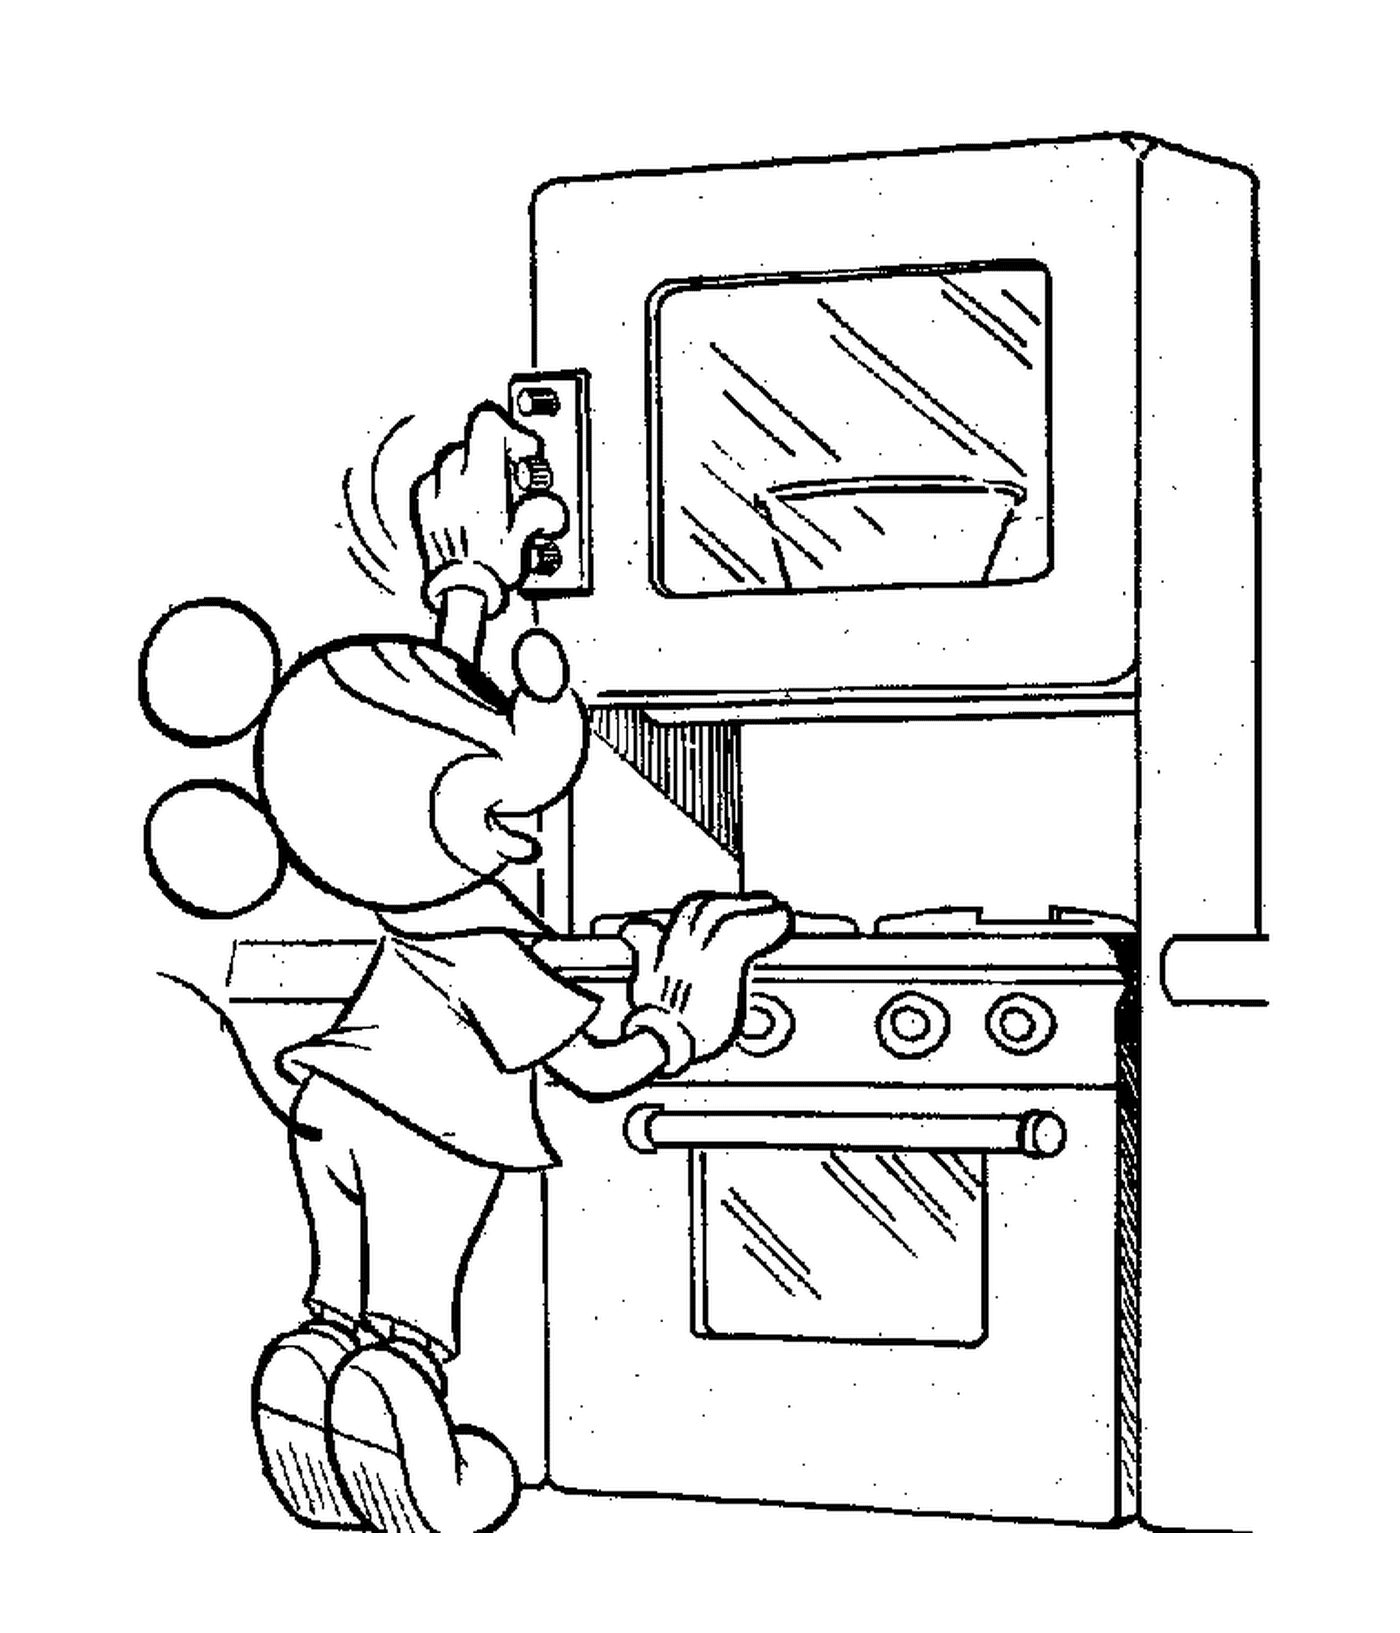  米奇点燃他的烤炉:卡通人物在厨房做饭 